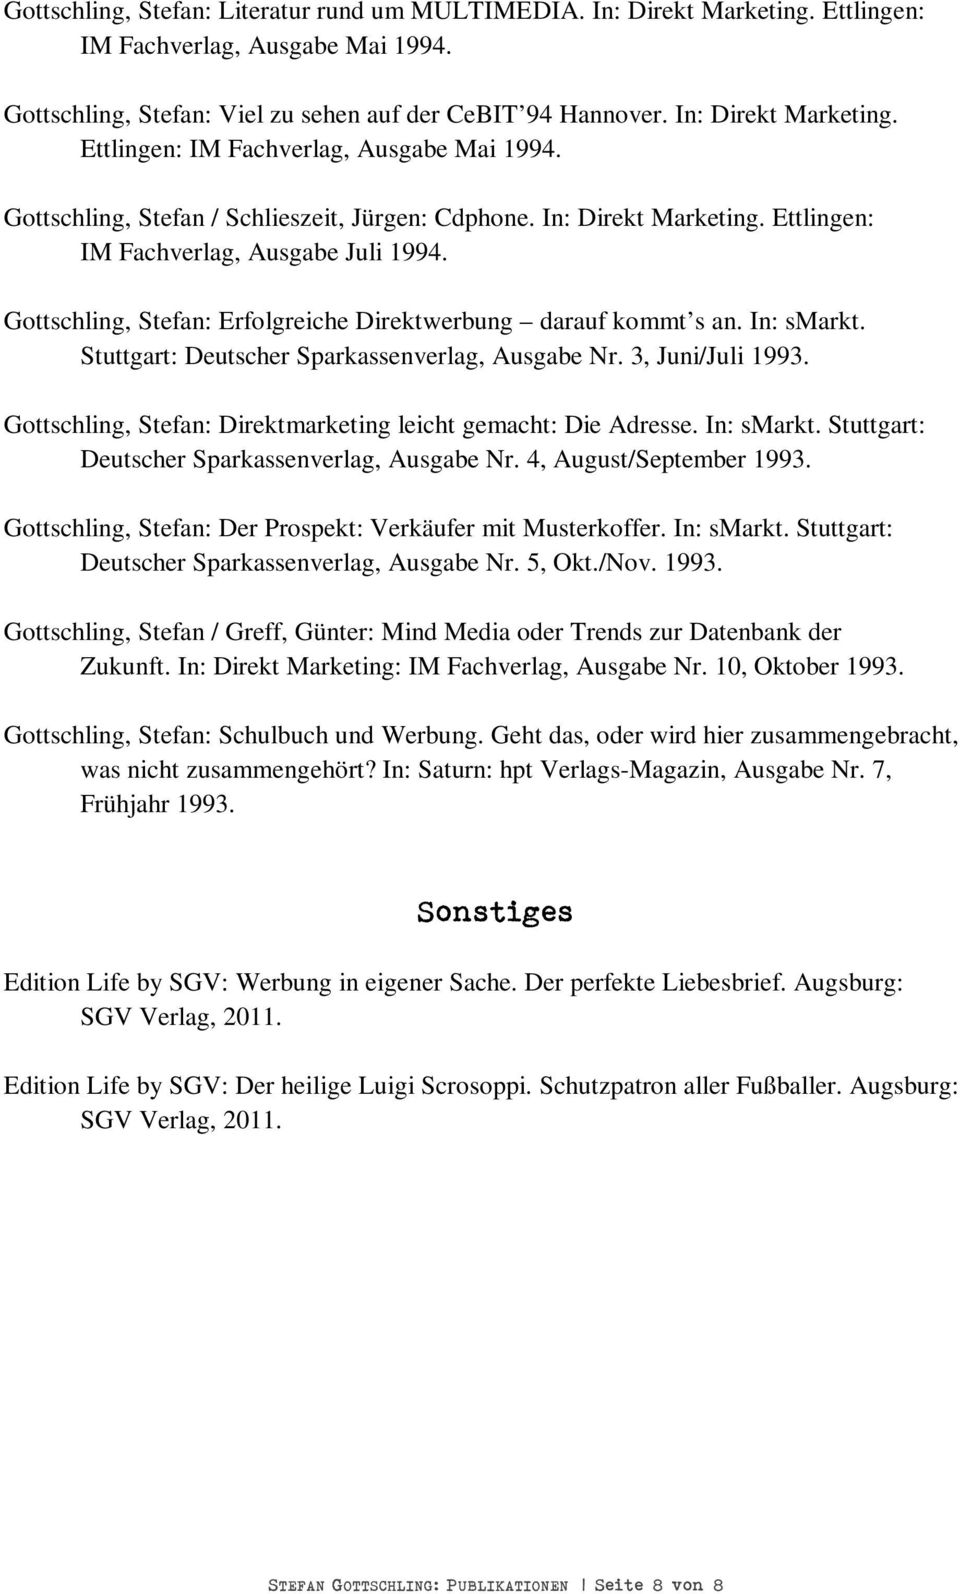 3, Juni/Juli 1993. Gottschling, Stefan: Direktmarketing leicht gemacht: Die Adresse. In: smarkt. Stuttgart: Deutscher Sparkassenverlag, Ausgabe Nr. 4, August/September 1993.